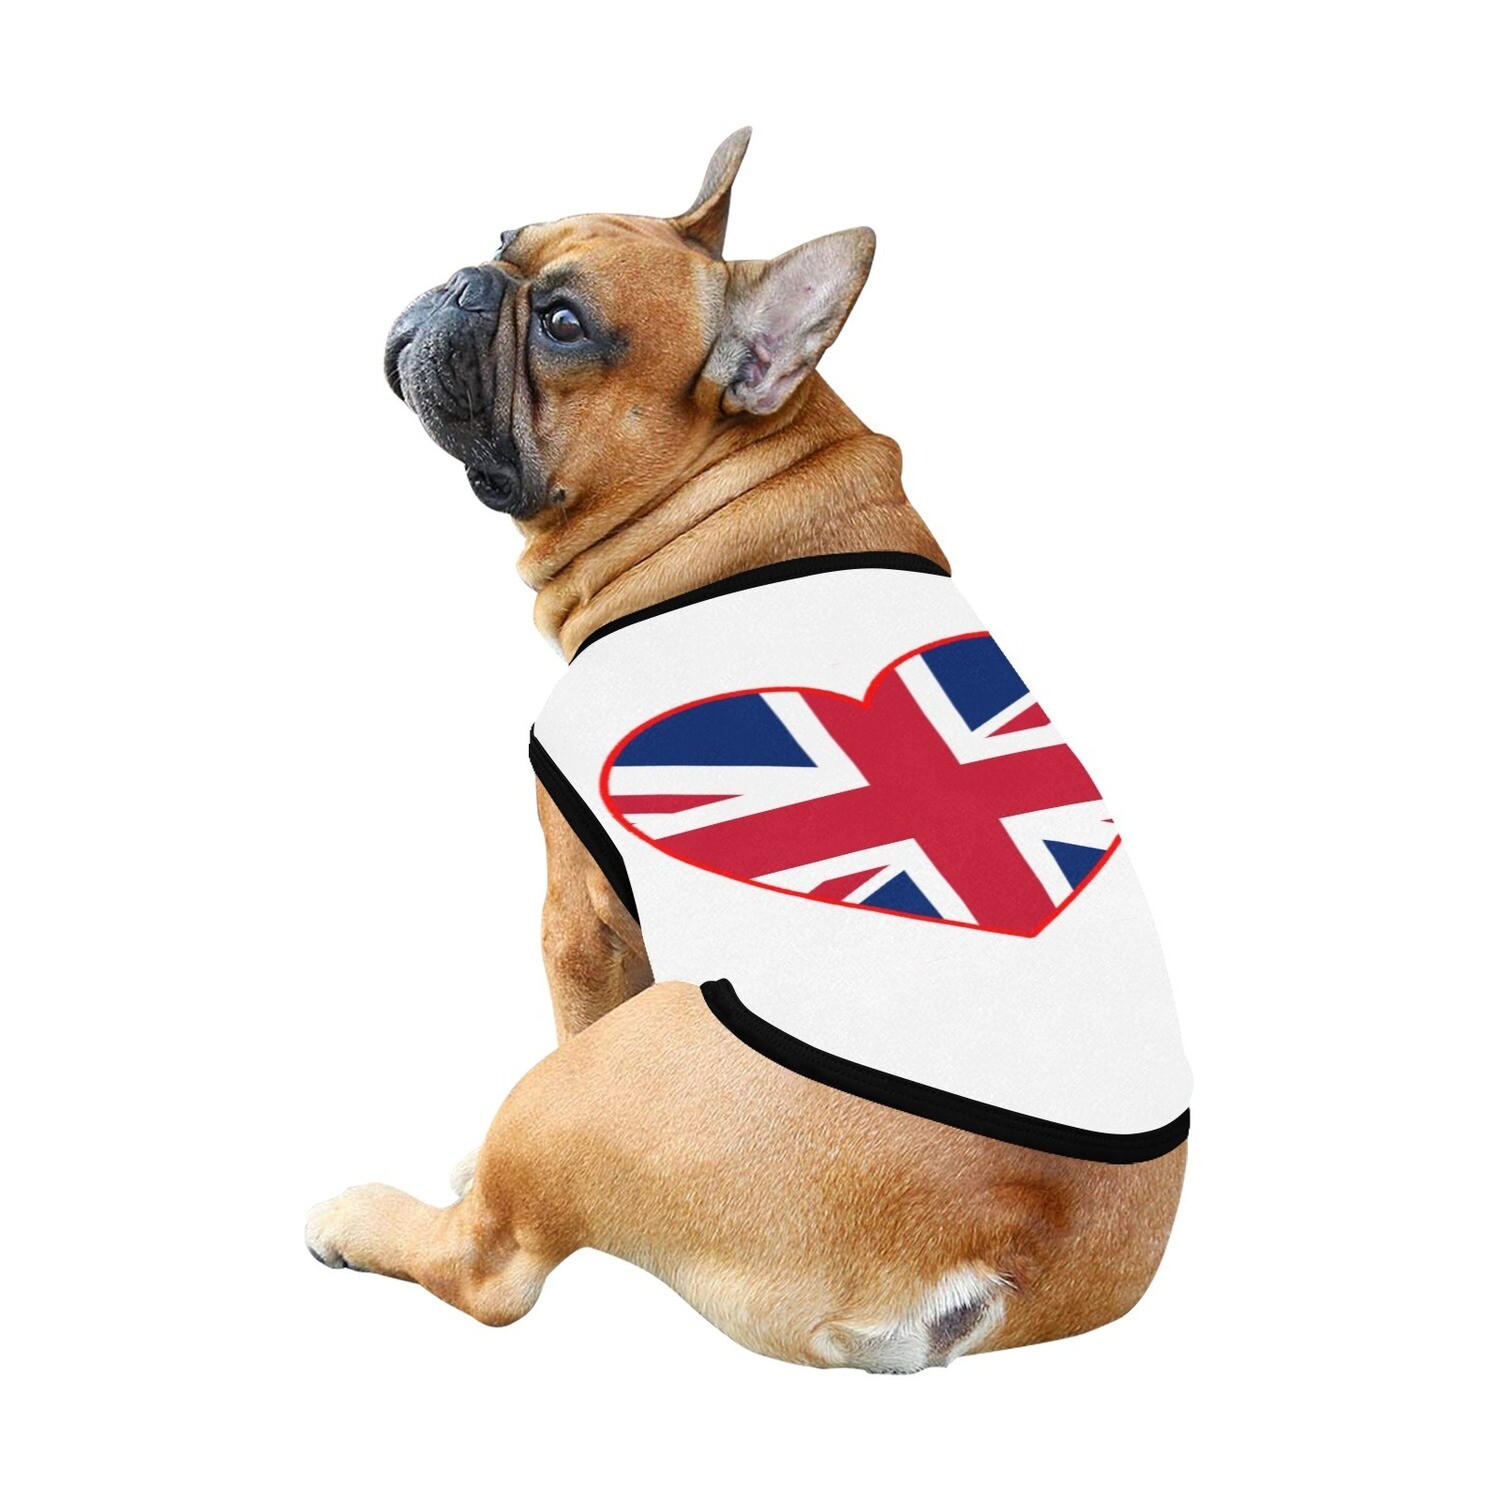 🐕🇬🇧 I love United Kingdom, Union Jack flag, dog t-shirt, dog gift, dog tank top, dog shirt, dog clothes, gift, 7 sizes XS to 3XL, heart shape, white